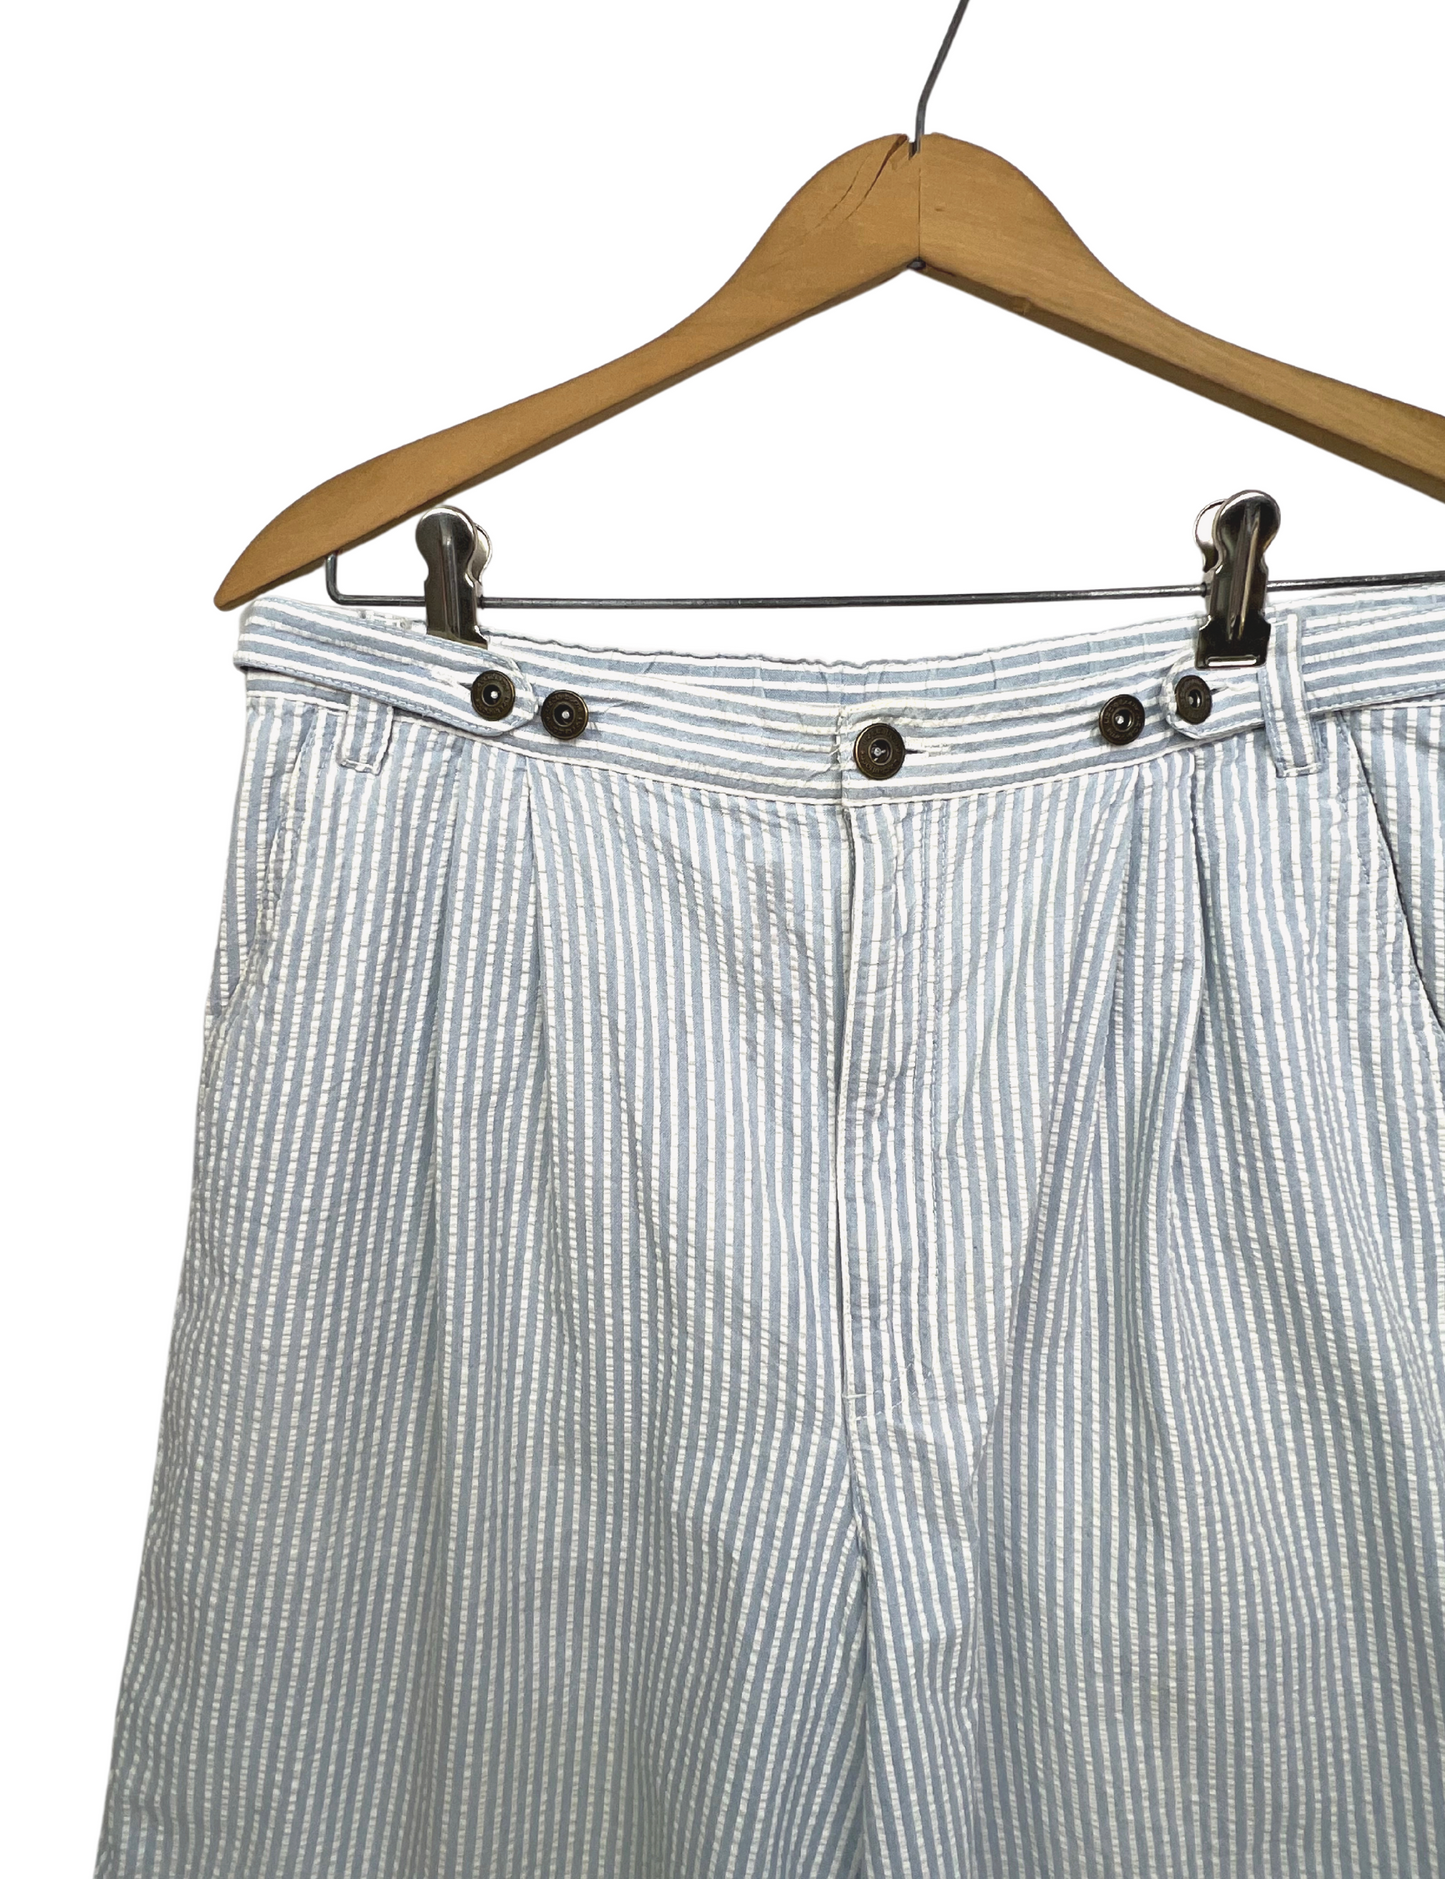 90’s Liz Claiborne Seersucker Pleated 7.5” Shorts Size 12